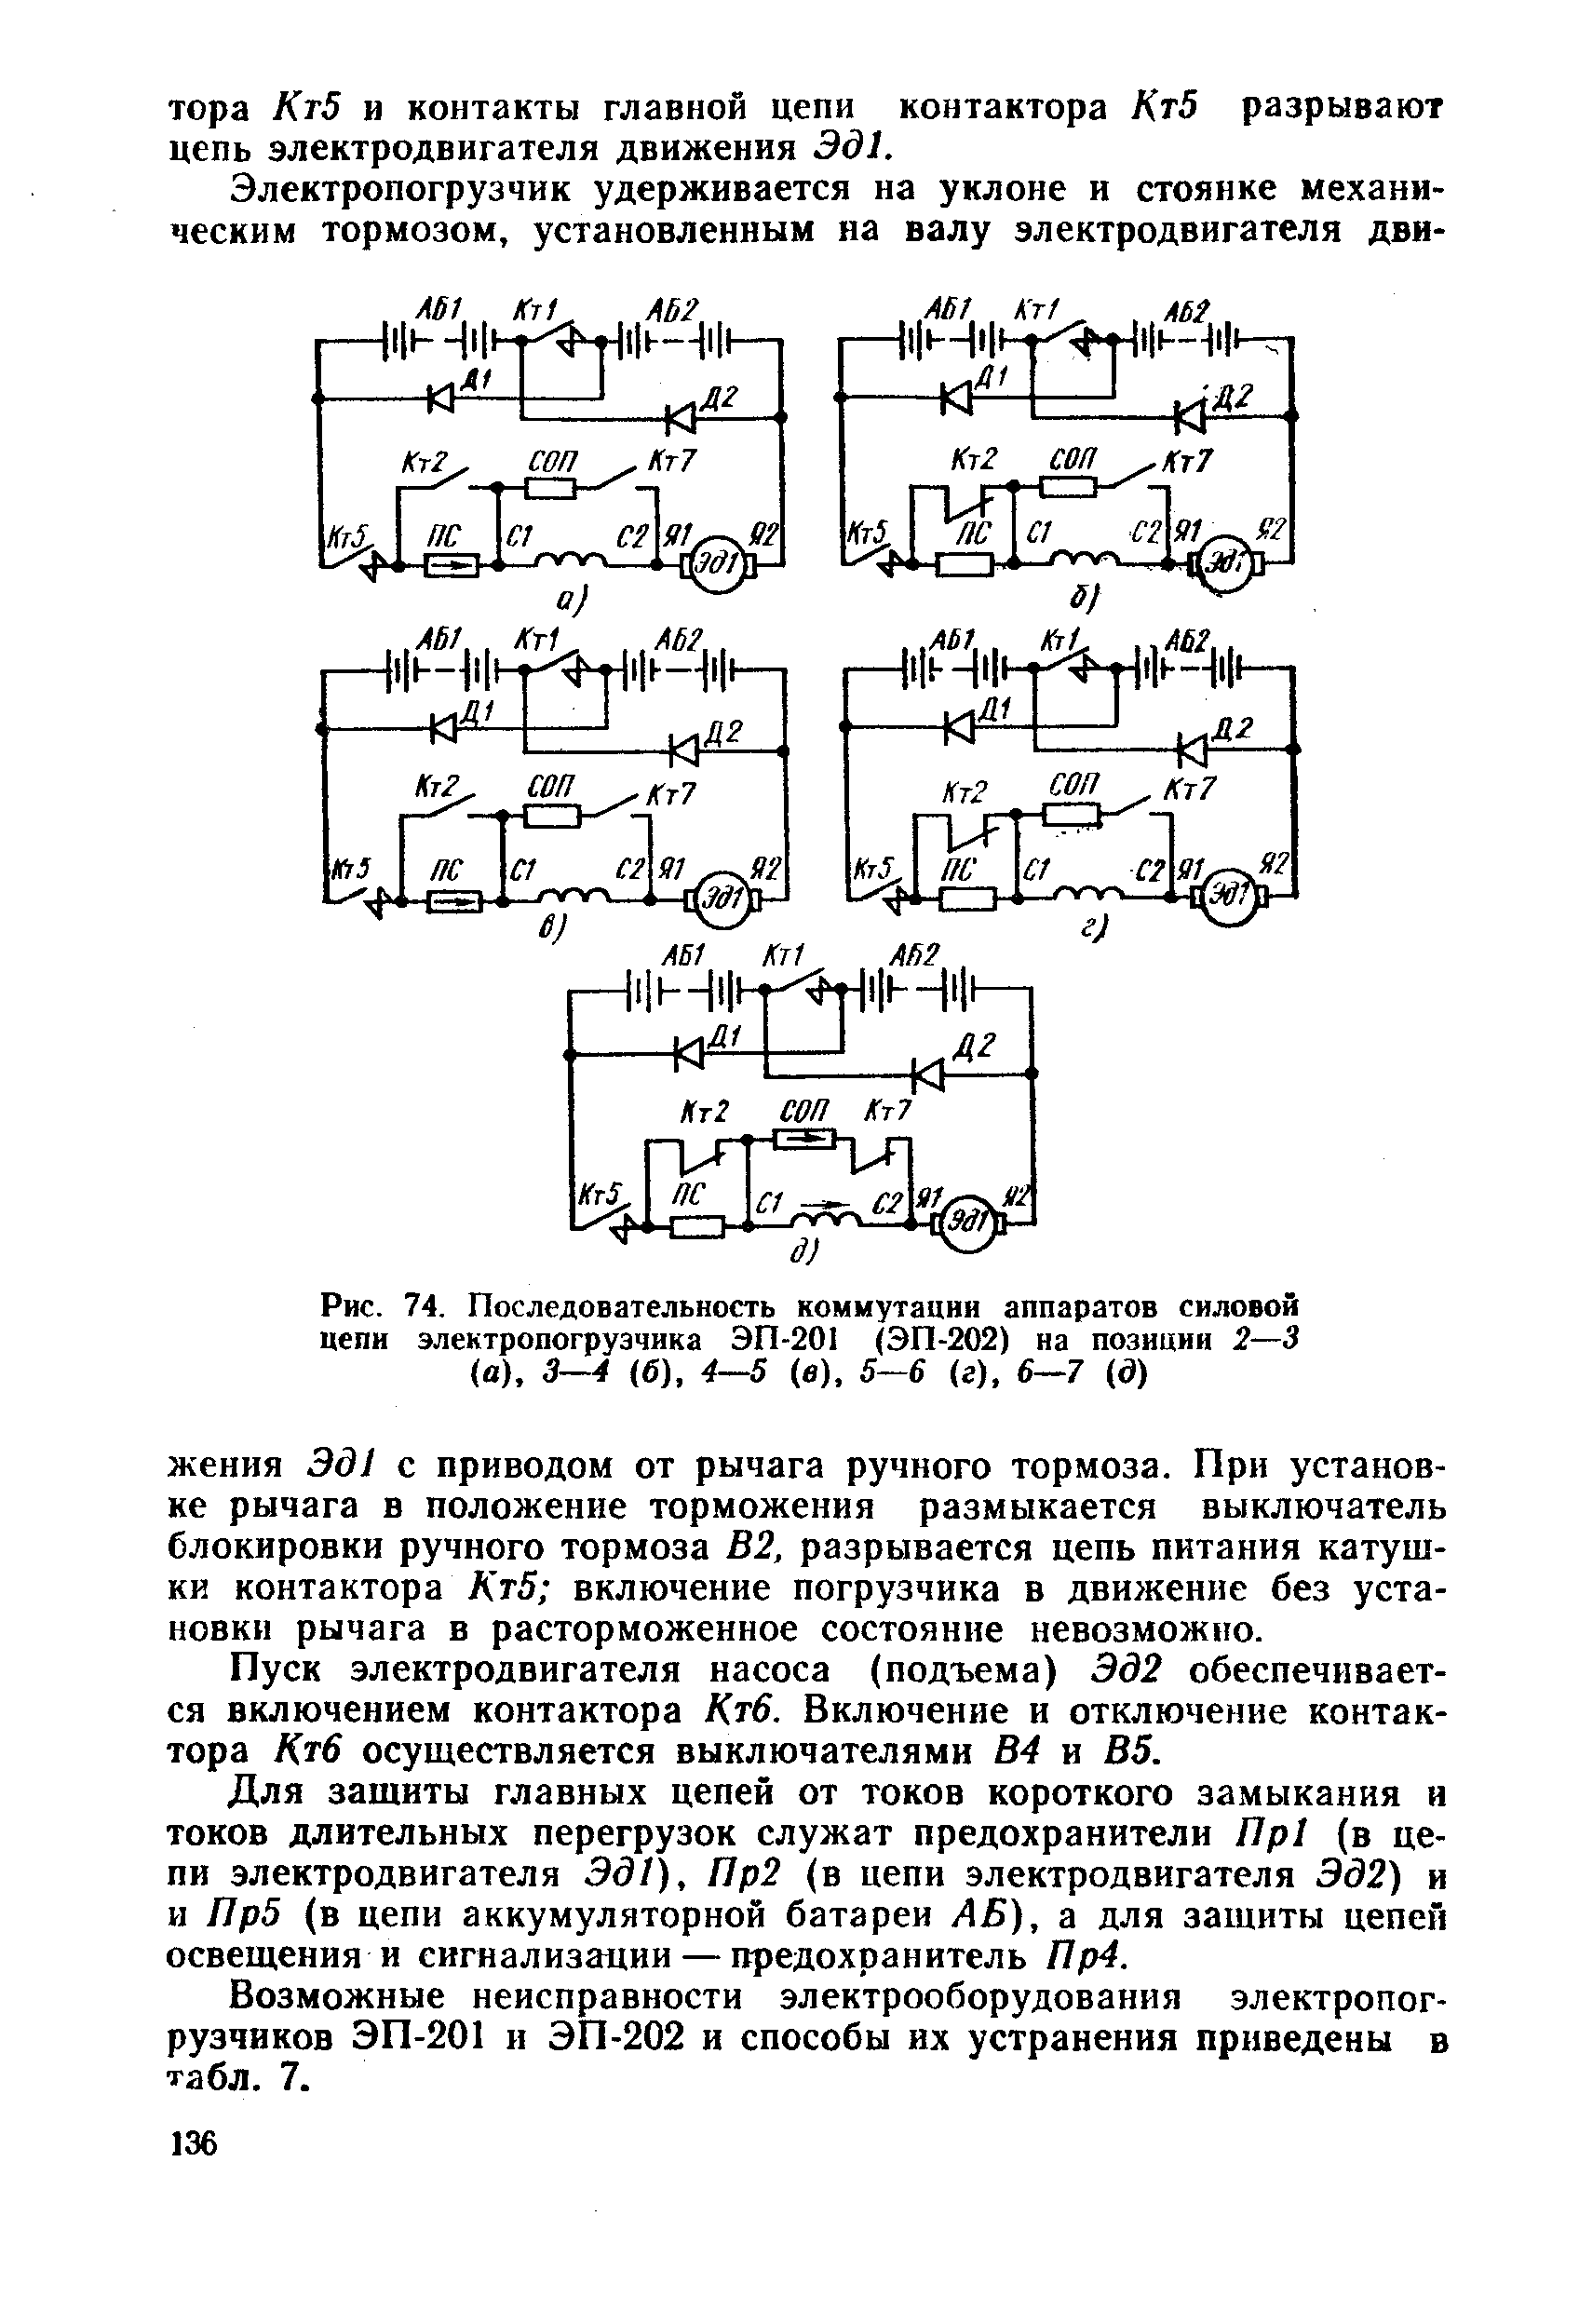 Рис. 74. Последовательность коммутации аппаратов силовой цепи электропогрузчика ЭП-201 (ЭП-202) на позиции 2—3 (а), 3—4 (б), 4—5 (в). 5—6 (г), 6—7 (д)
